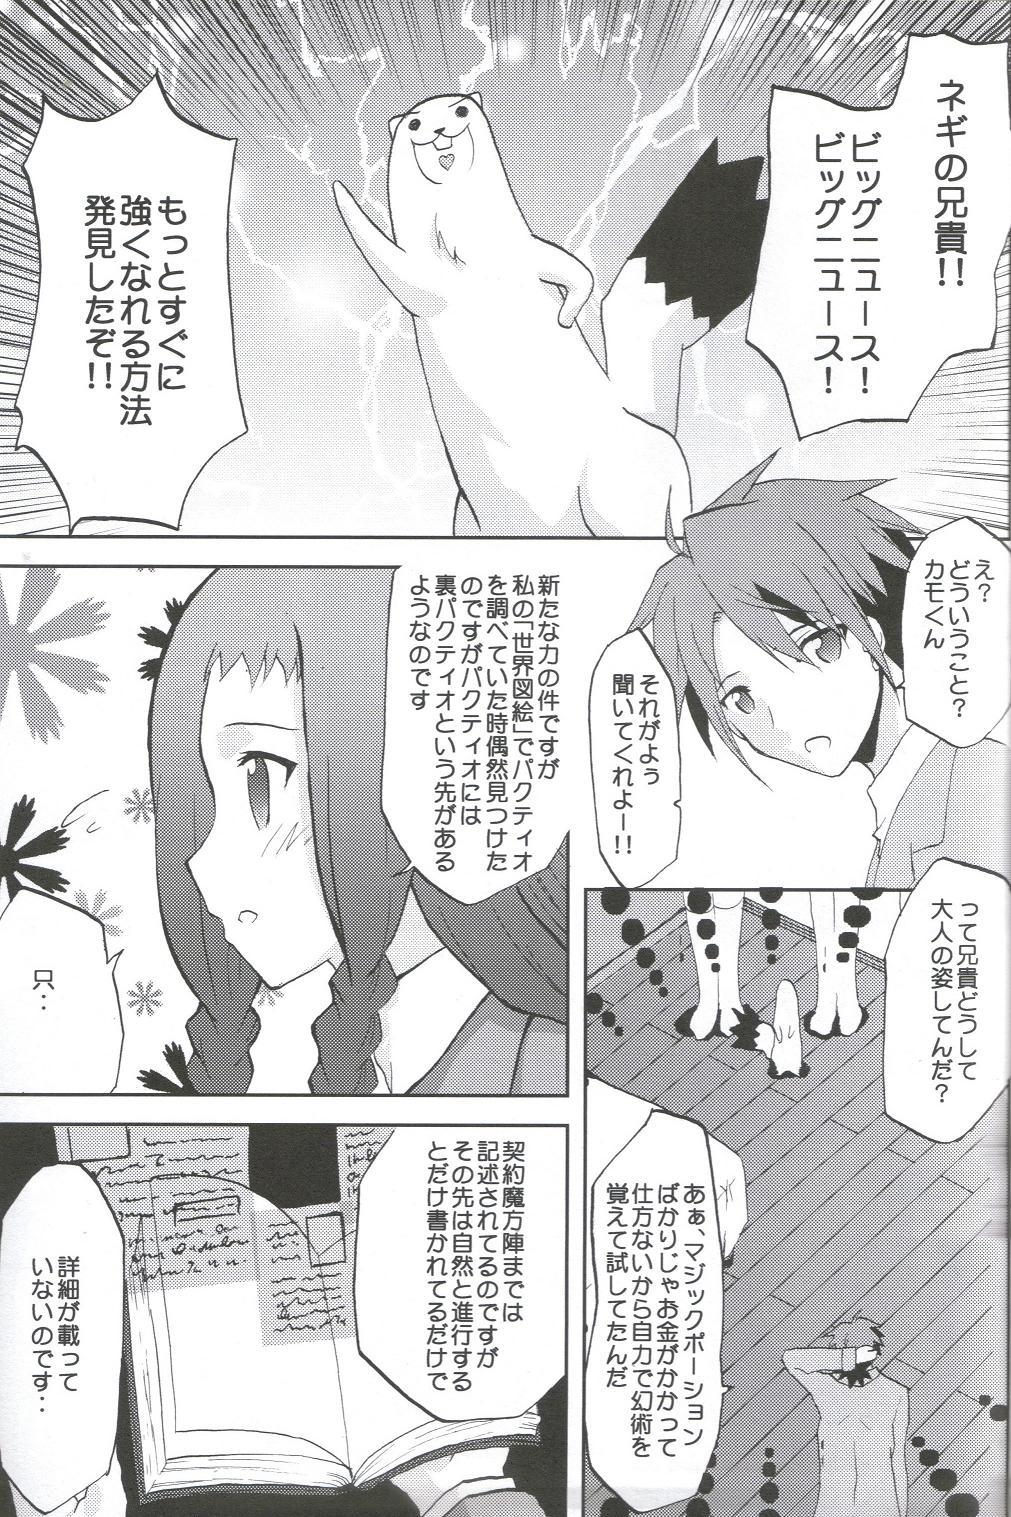 Pay Kansen Kakudai .Negi Vol.1 - Mahou sensei negima Negao - Page 4